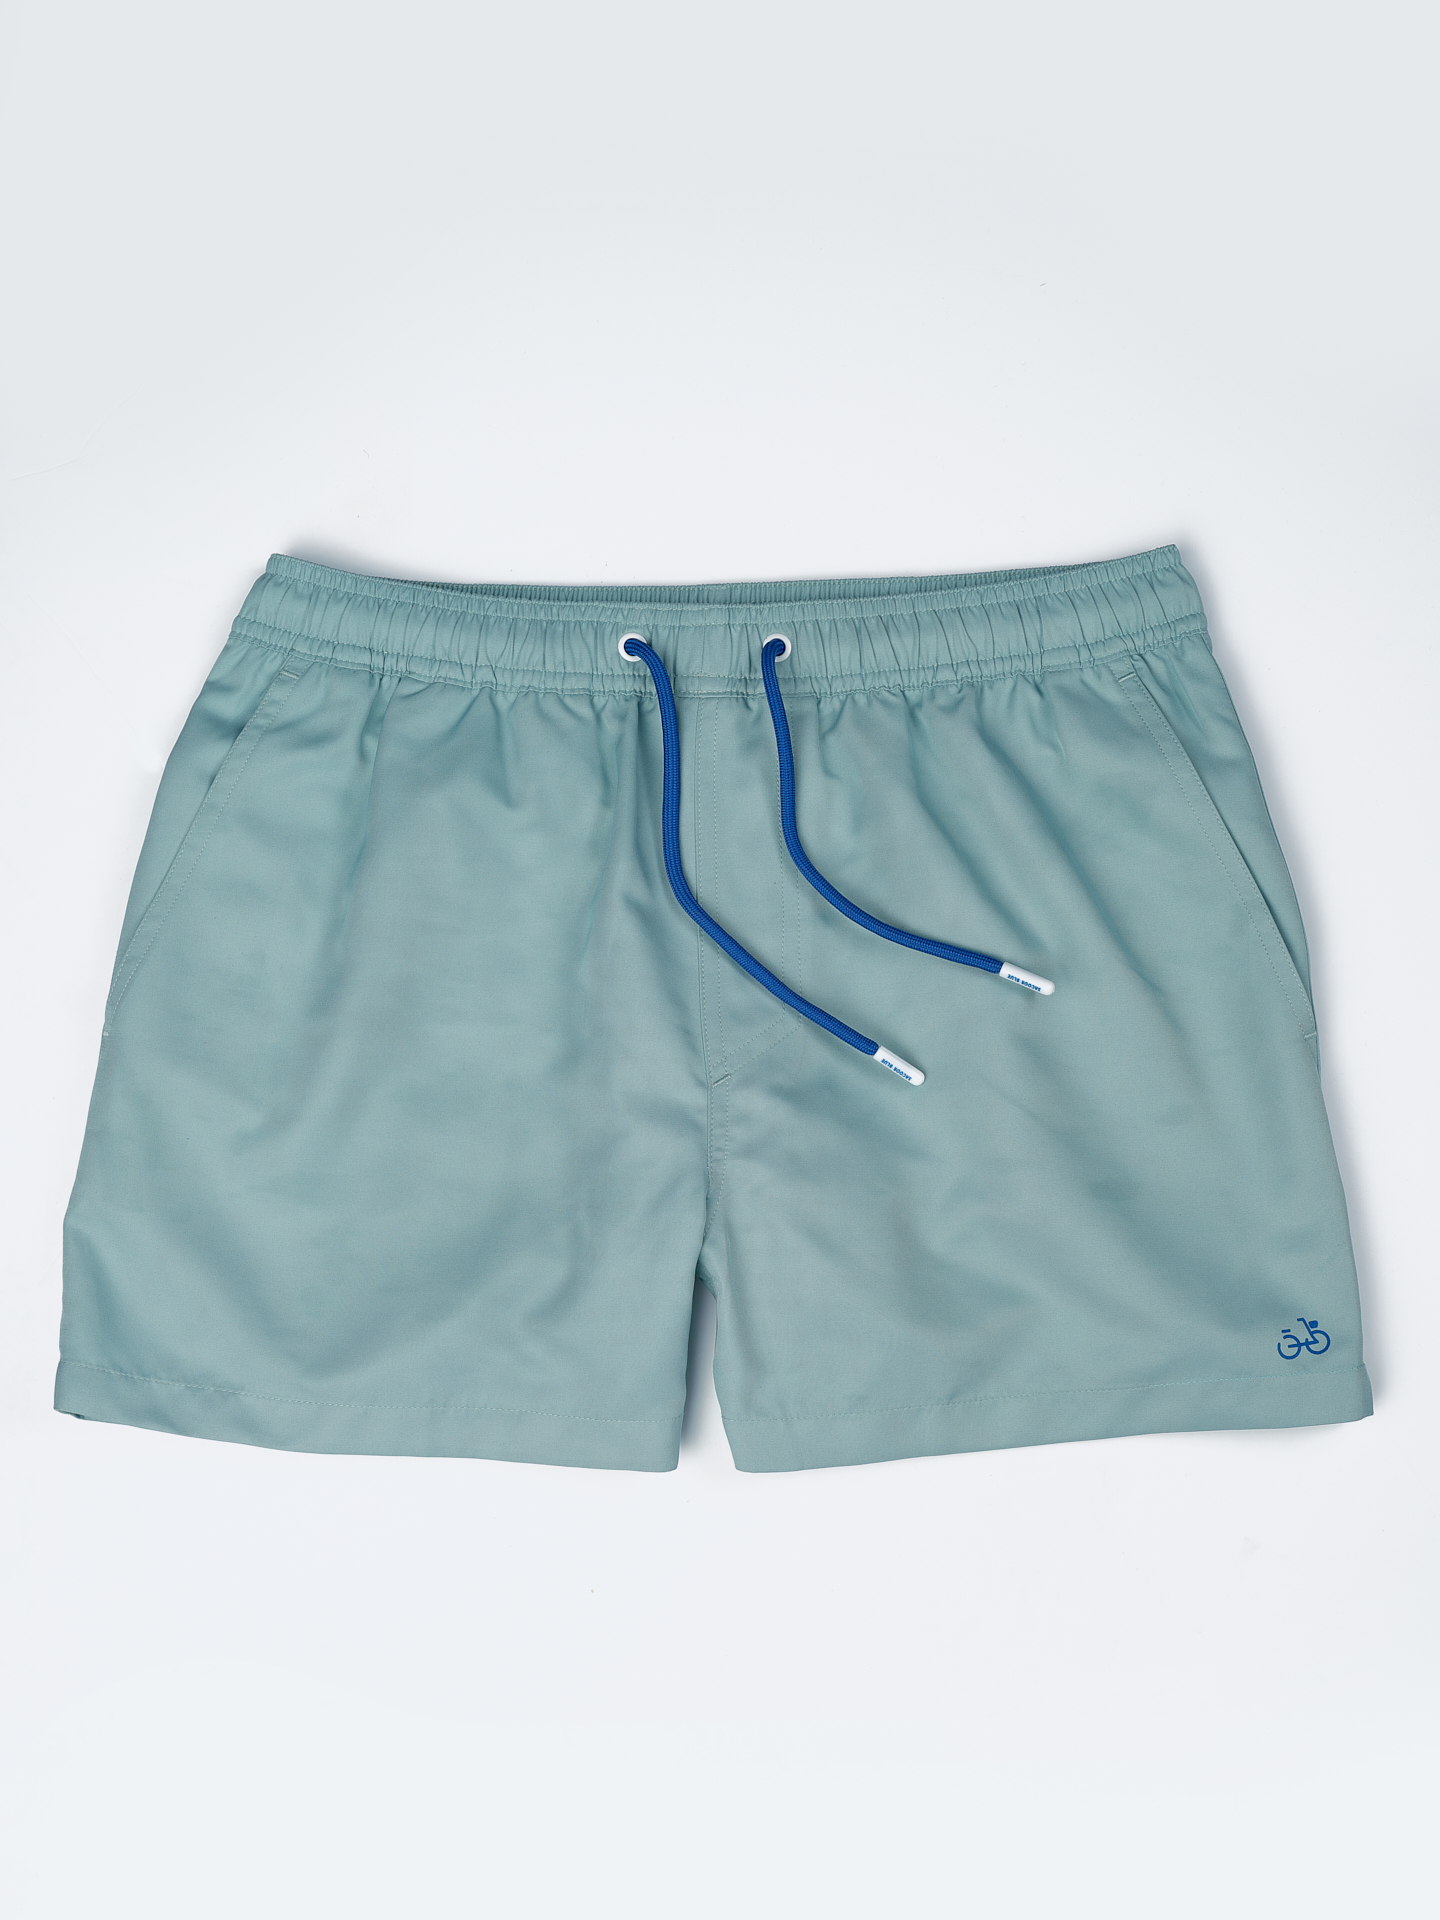 Beachwear Shorts Mint Casual Man